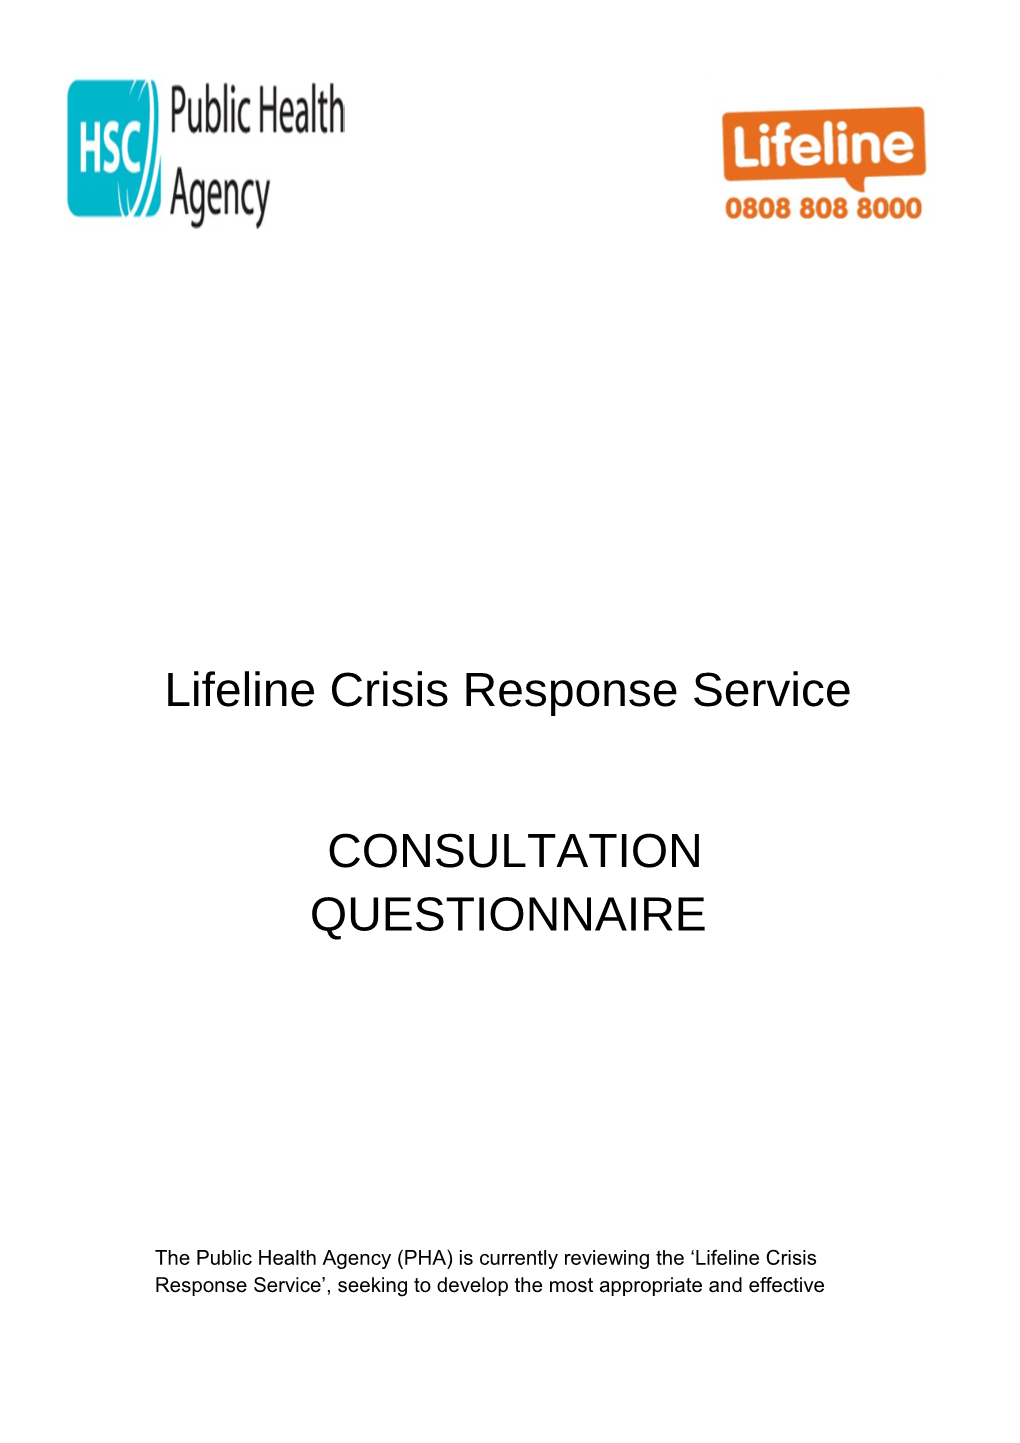 Consultation Questionnaire